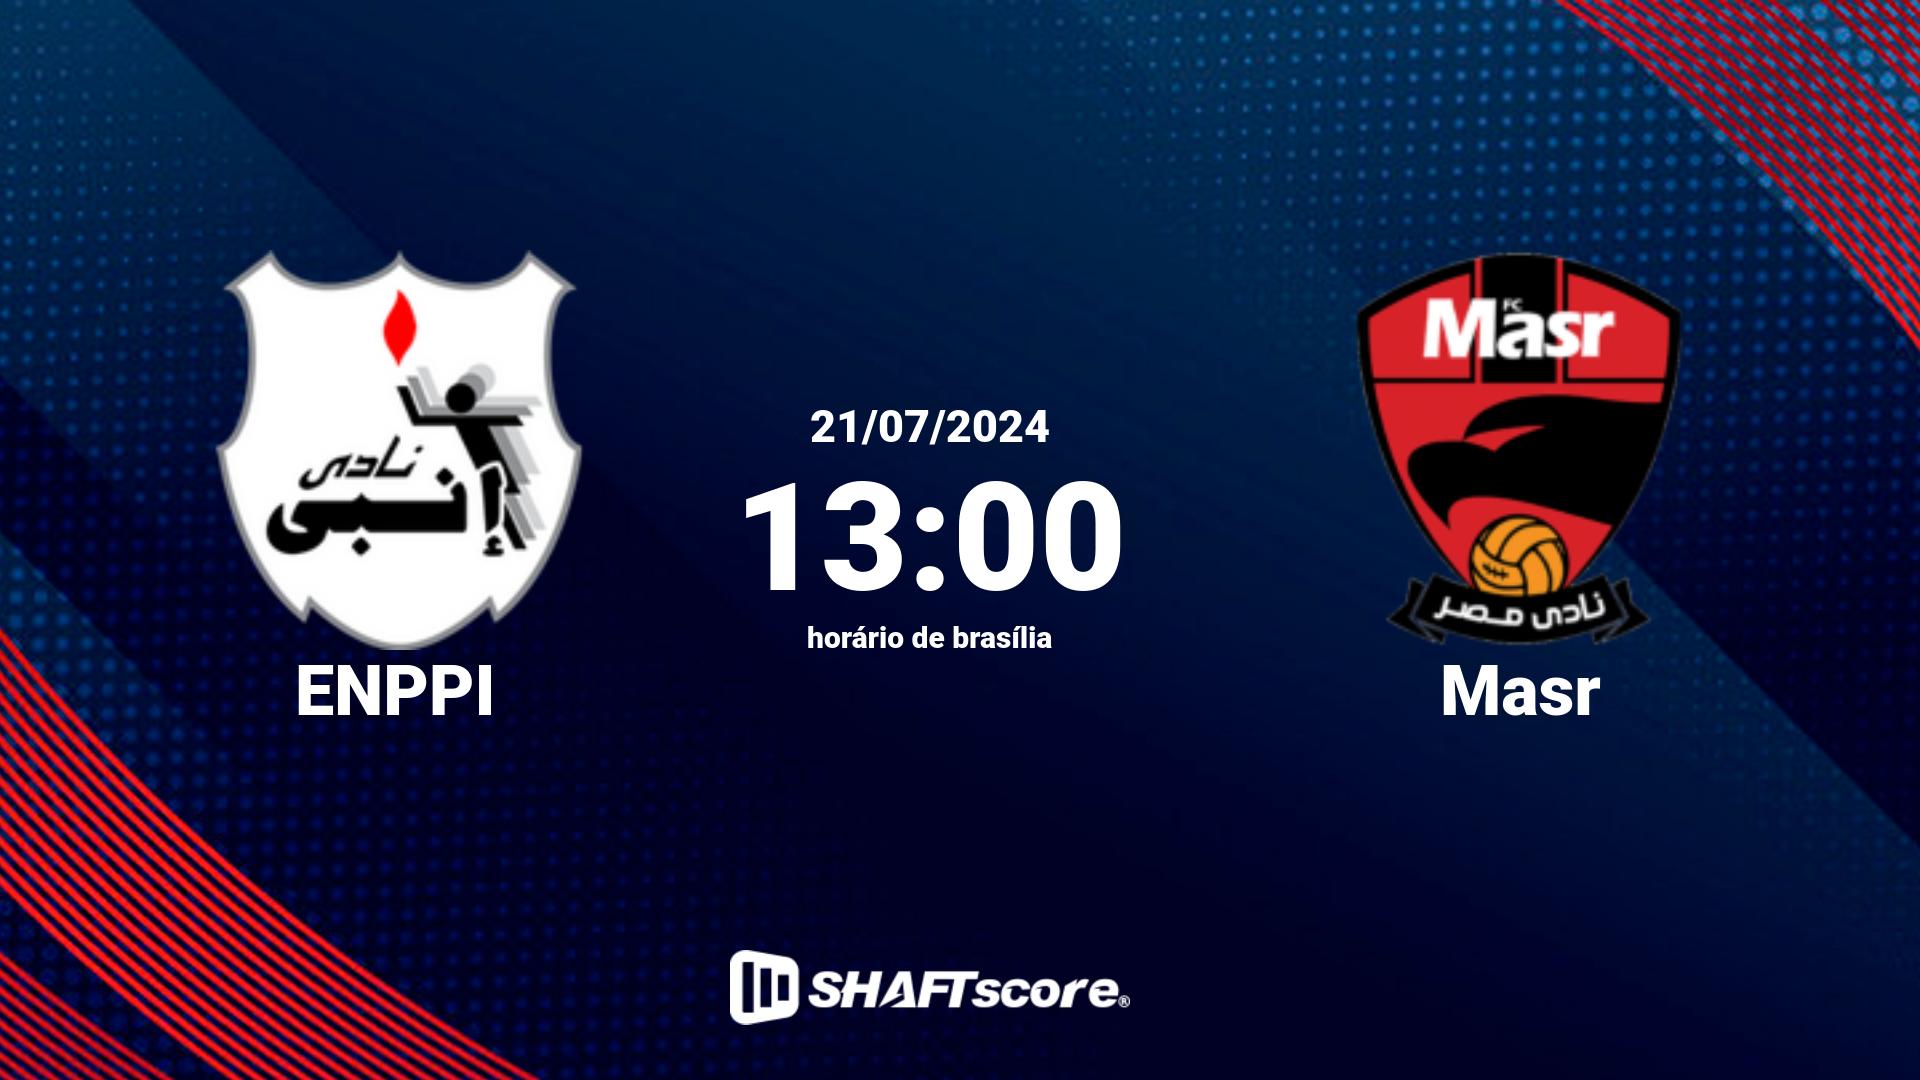 Estatísticas do jogo ENPPI vs Masr 21.07 13:00